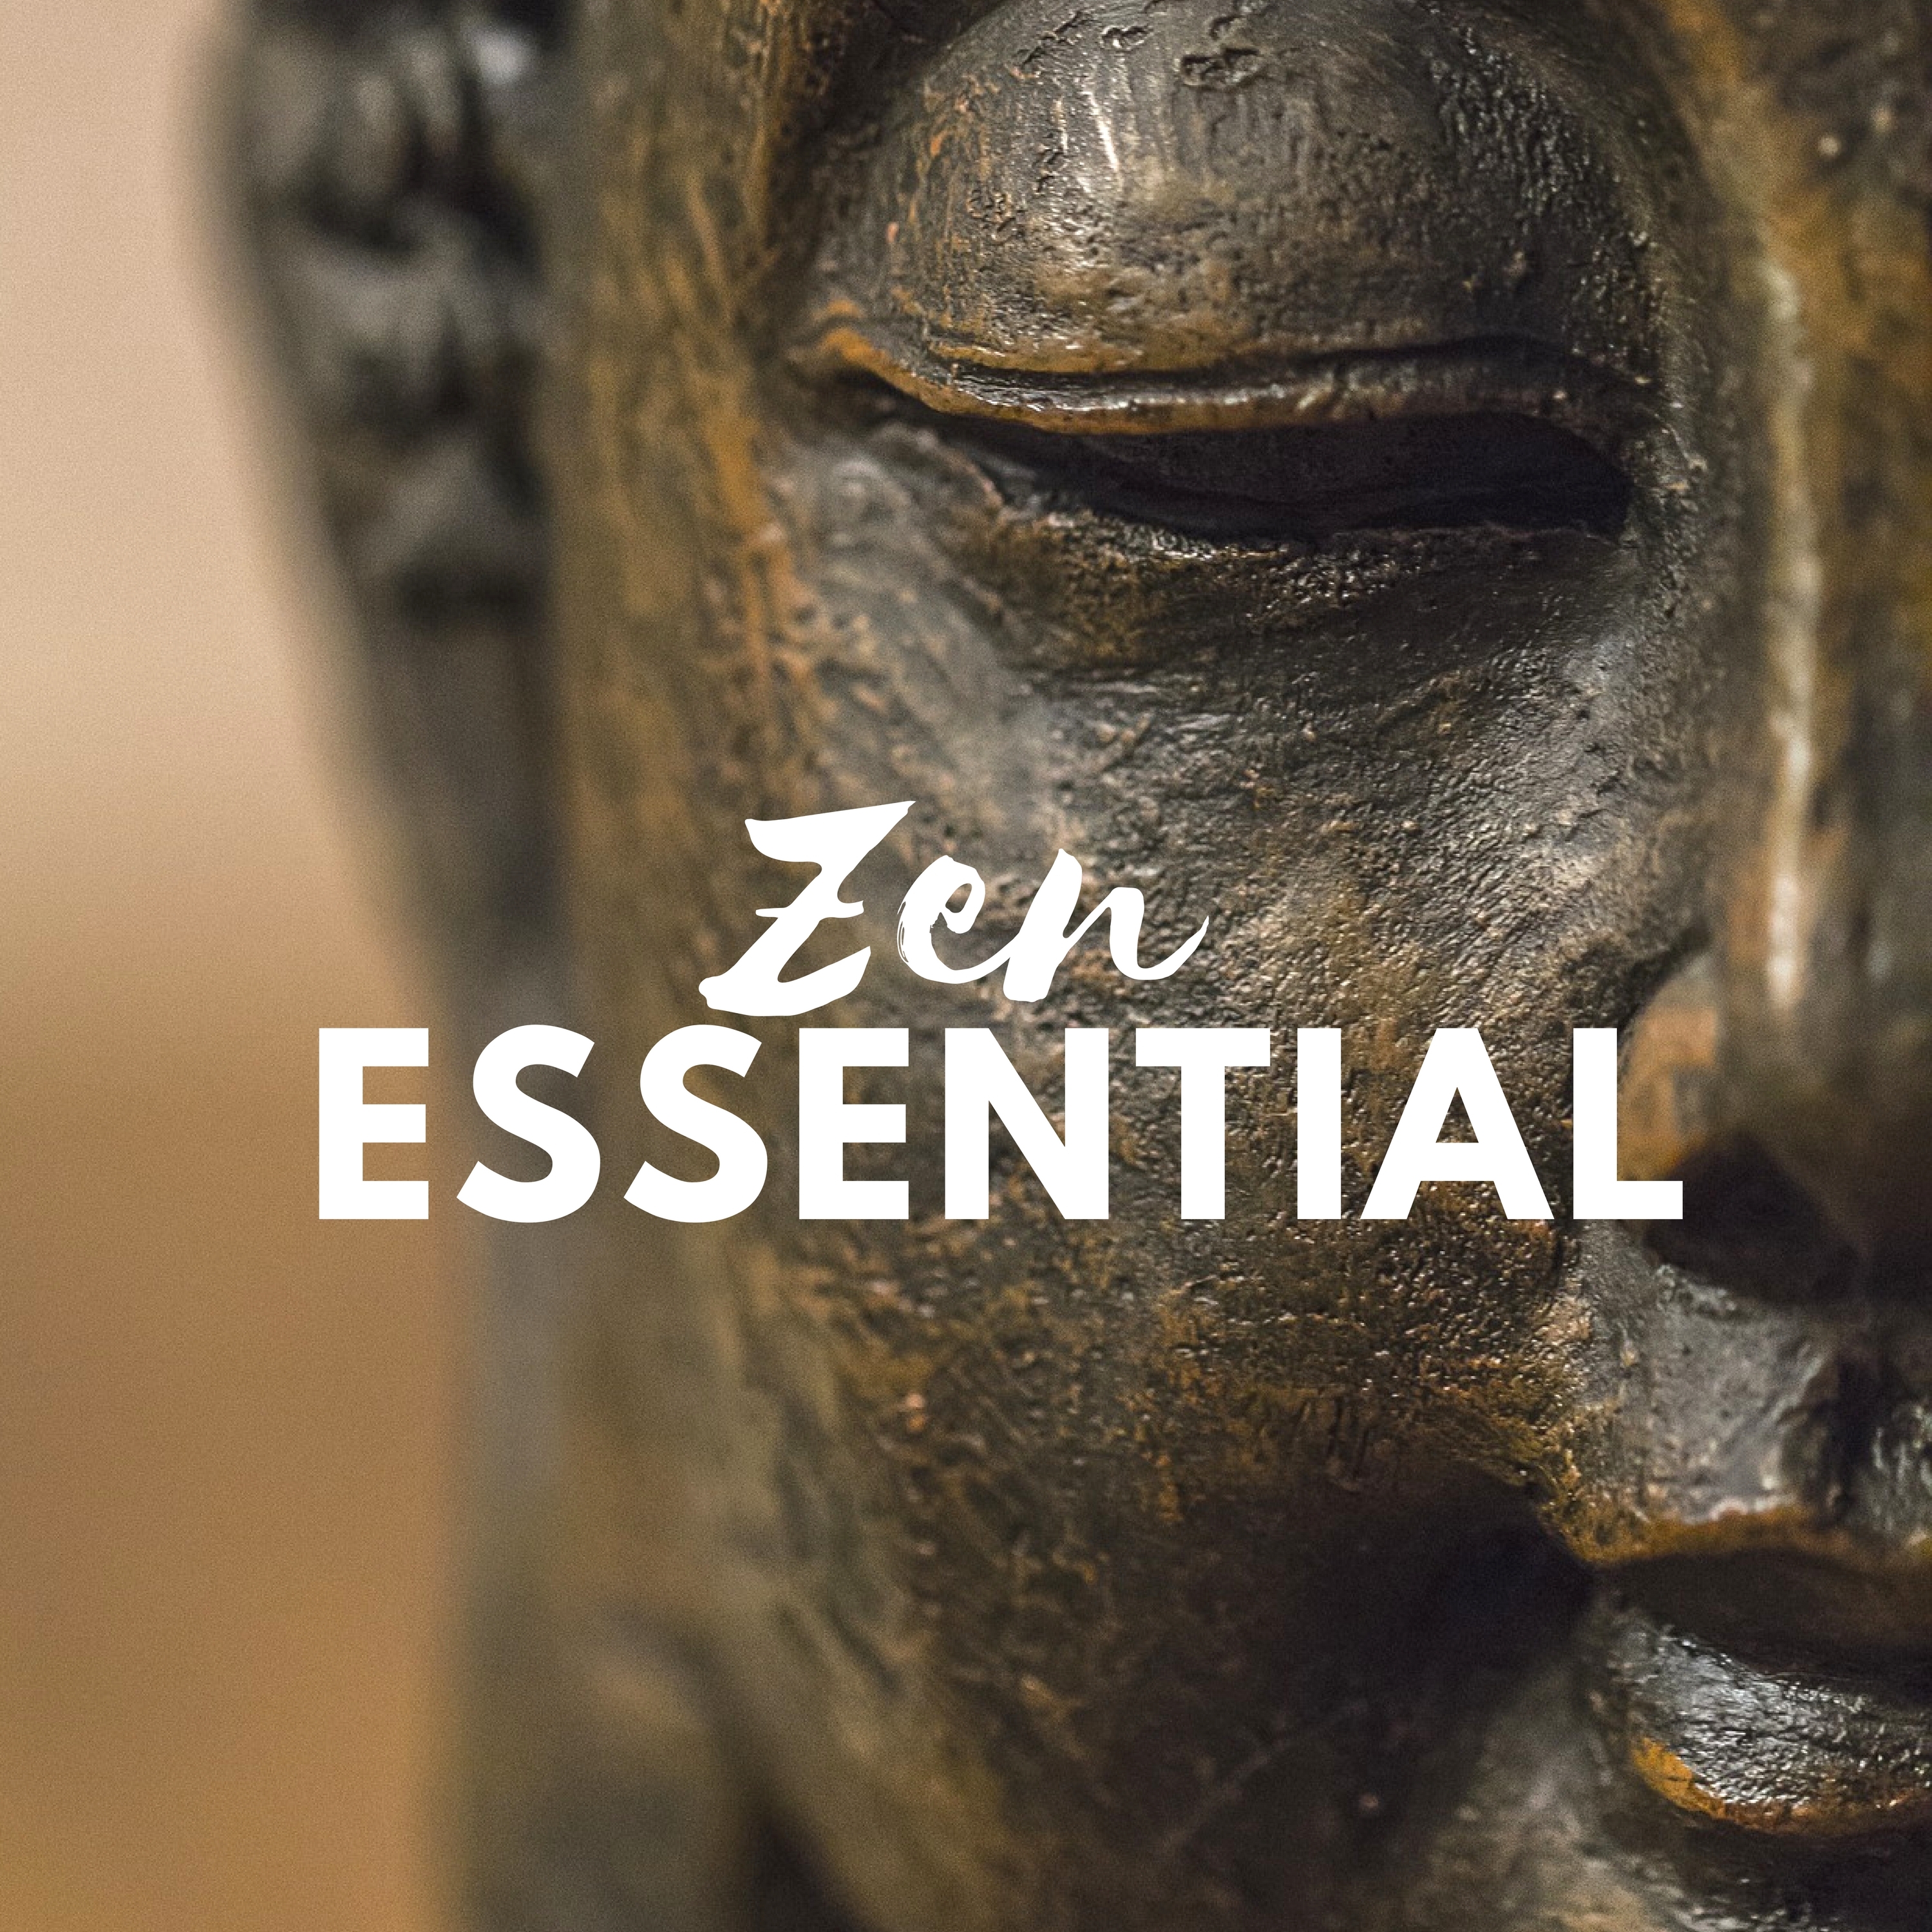 Zen Essential